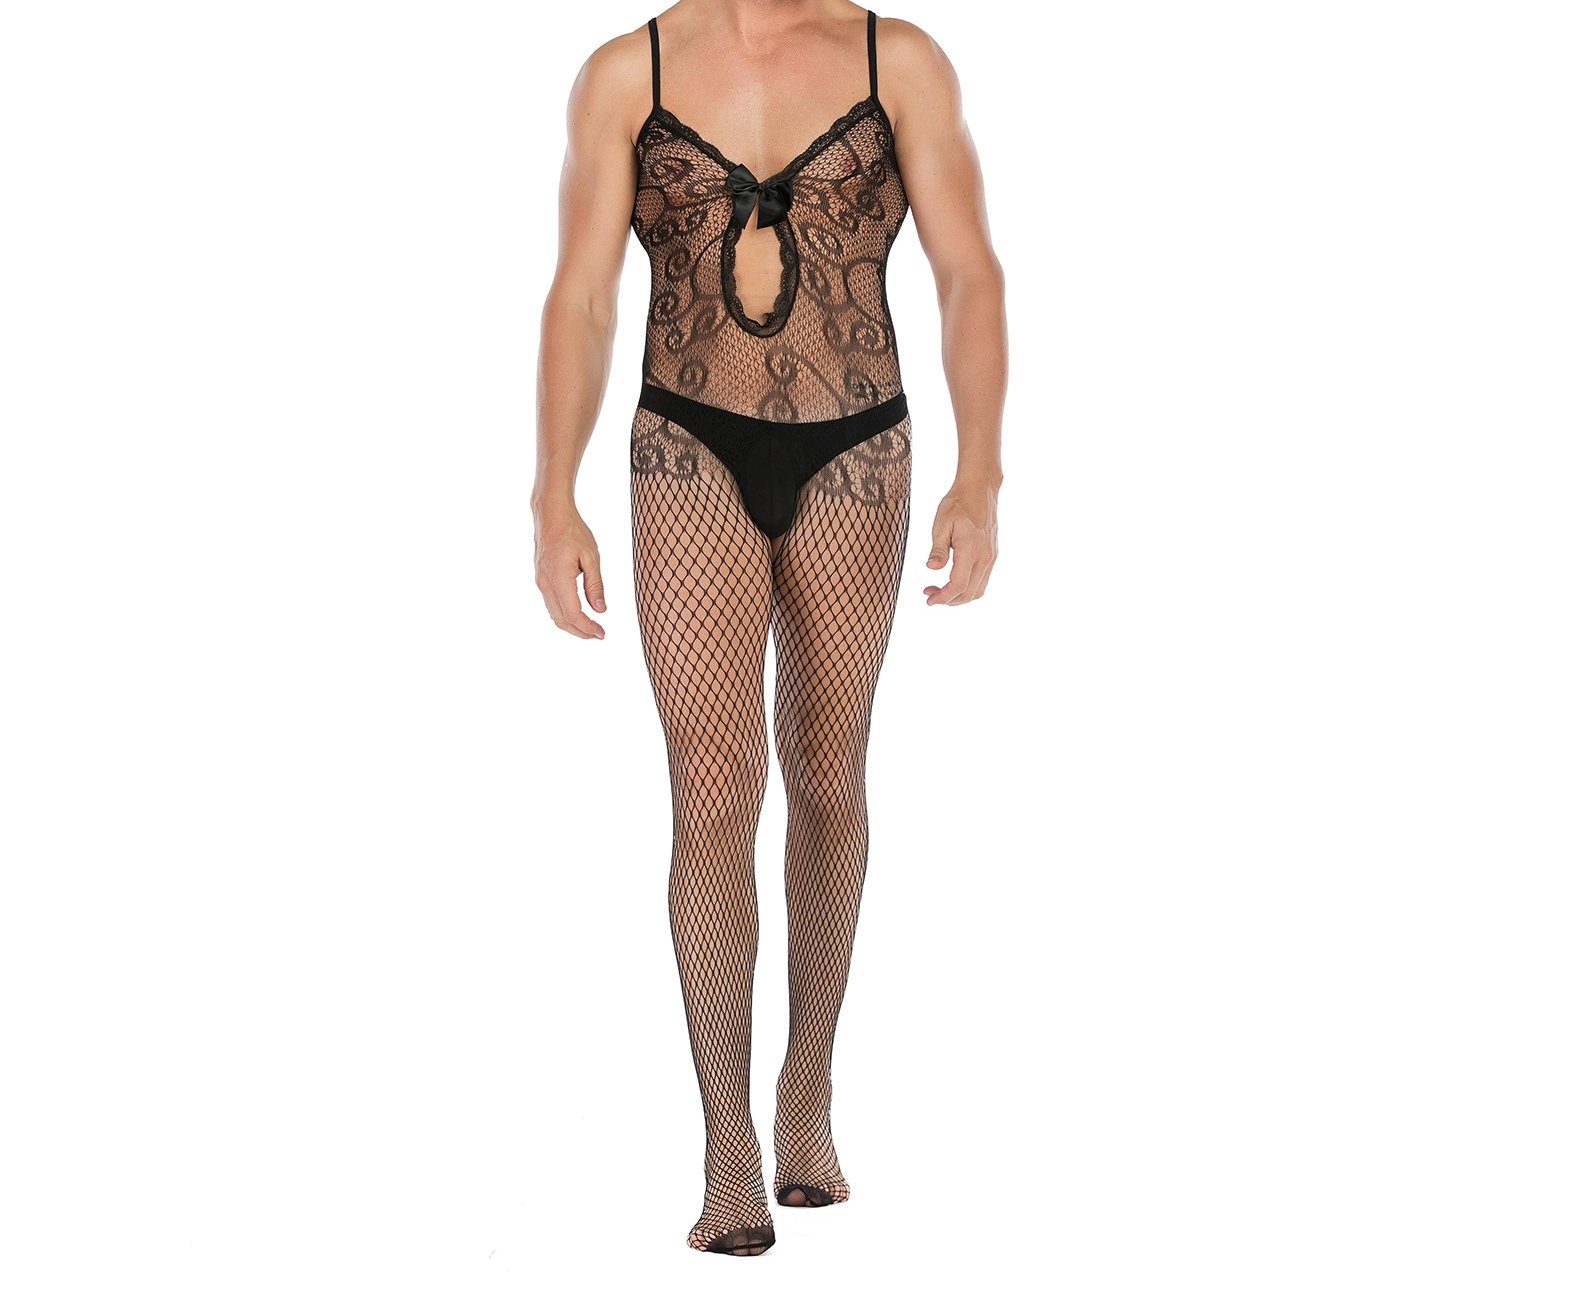 HOTFUN Lange Unterhose »Herren Body Overall Transparent Einteiler  Ganzkörperanzug Strumpfhosen Männer Unterhemd Unterwäsche« online kaufen |  OTTO